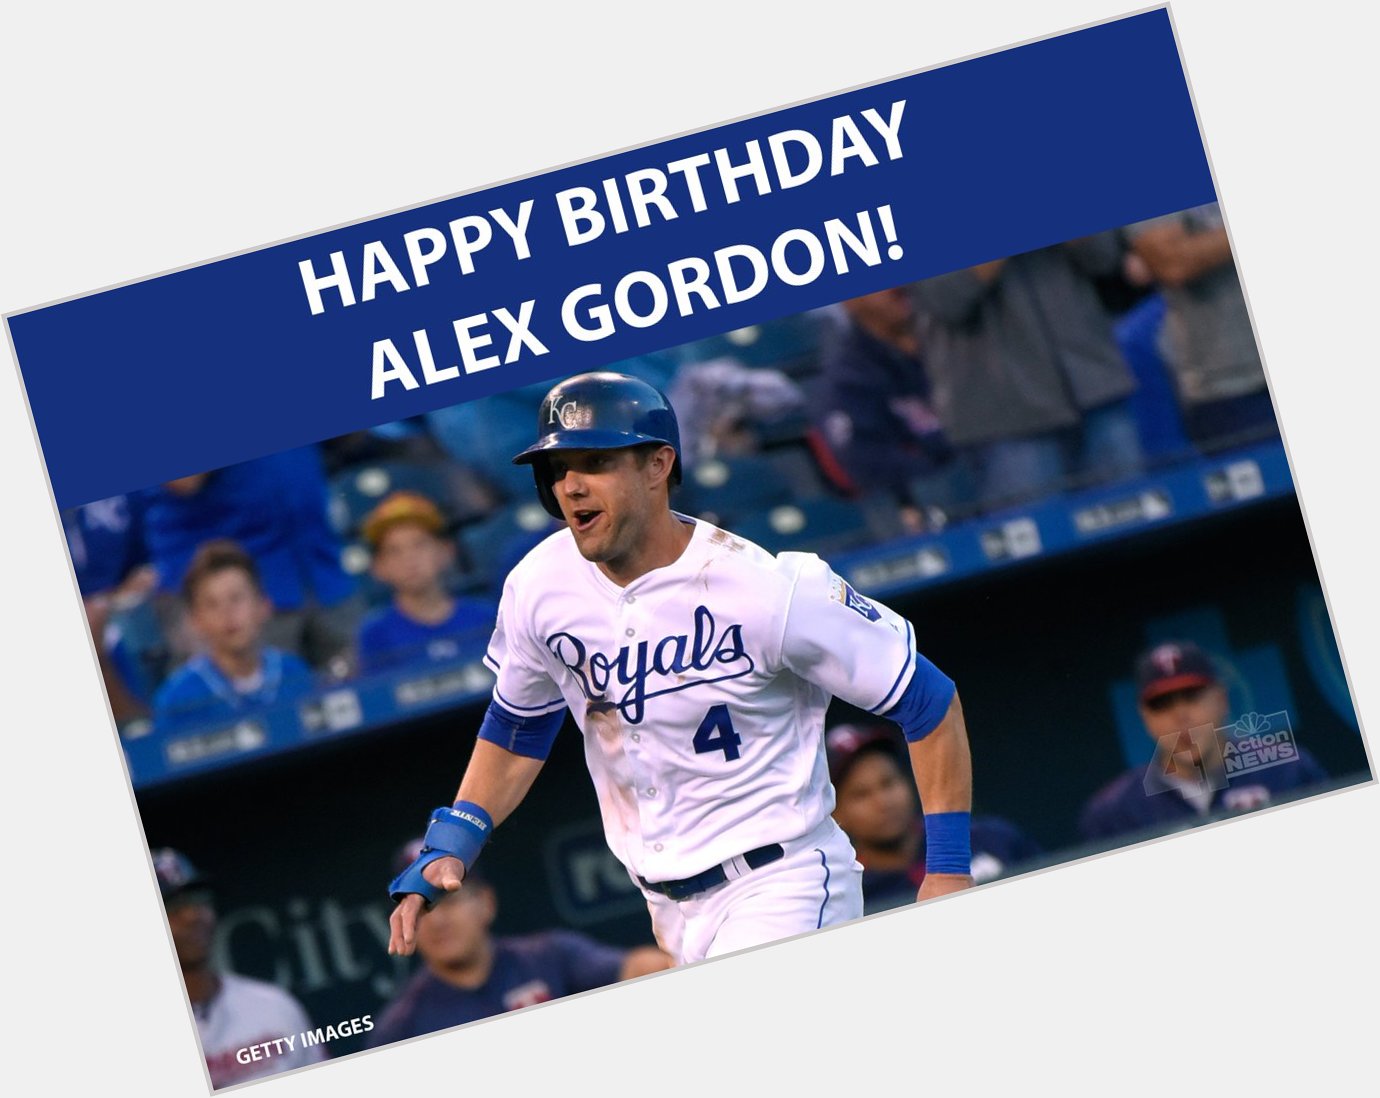 HAPPY BIRTHDAY to player Alex Gordon! 